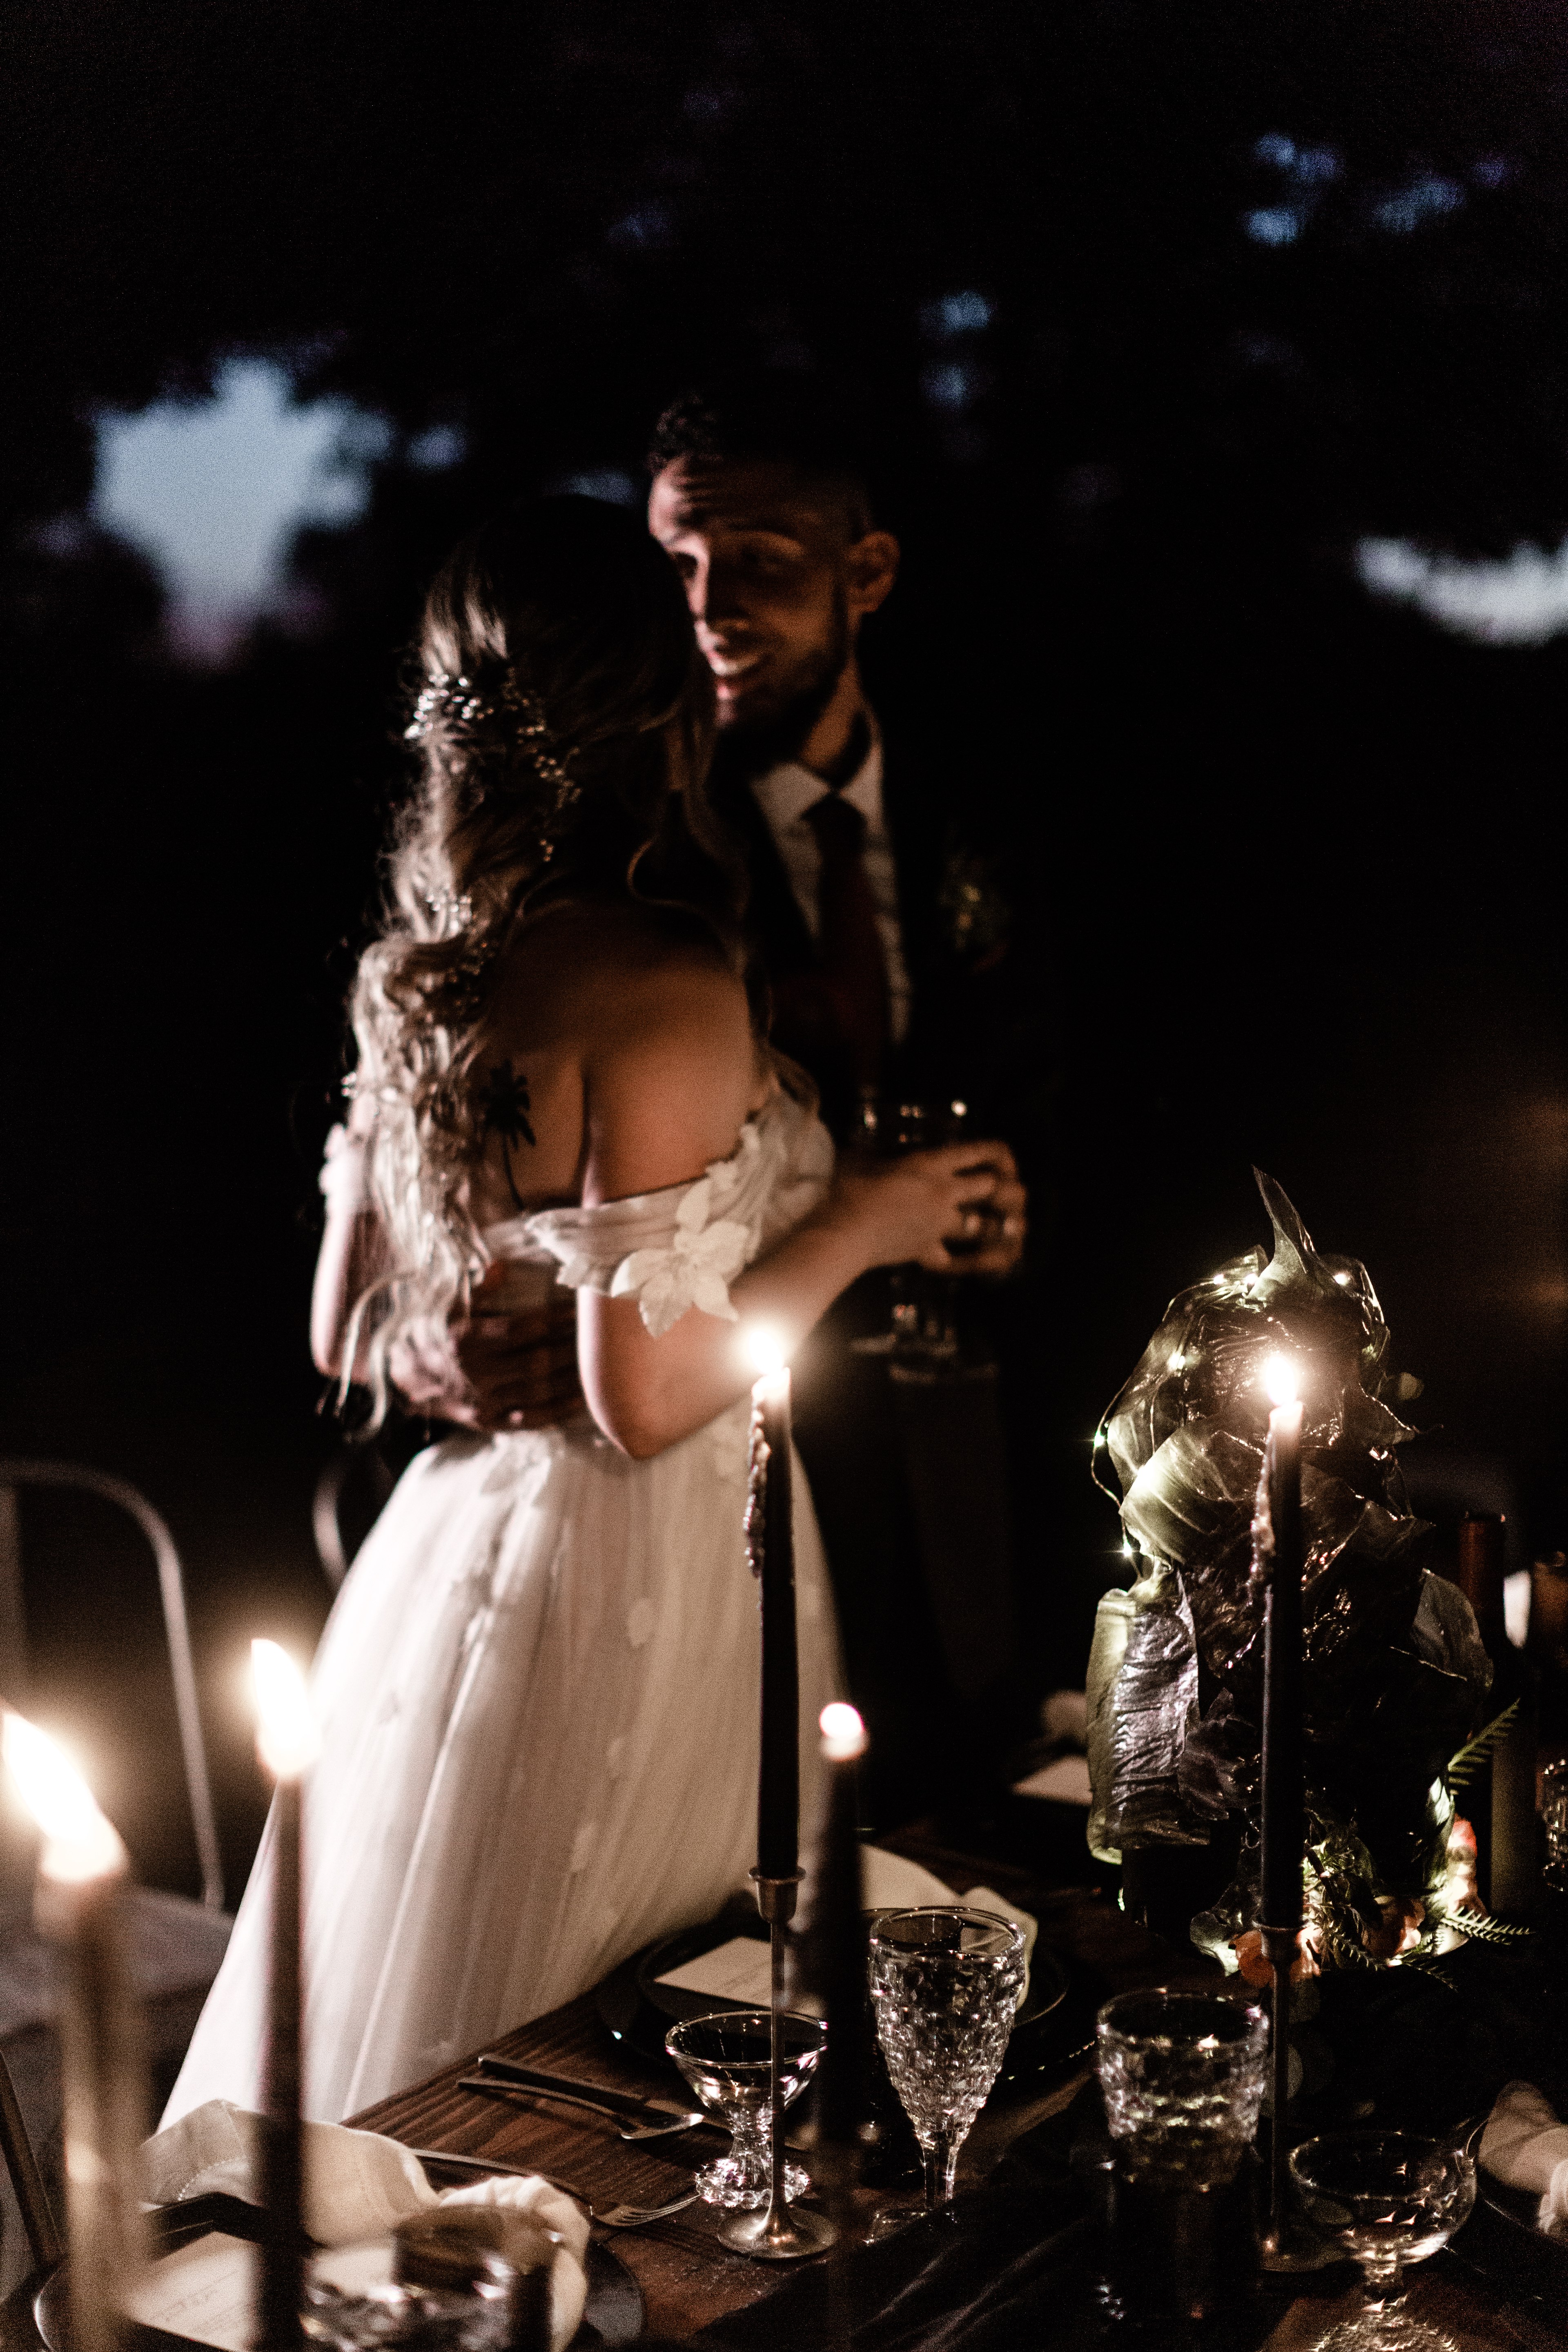 after dark wedding photos with natural light